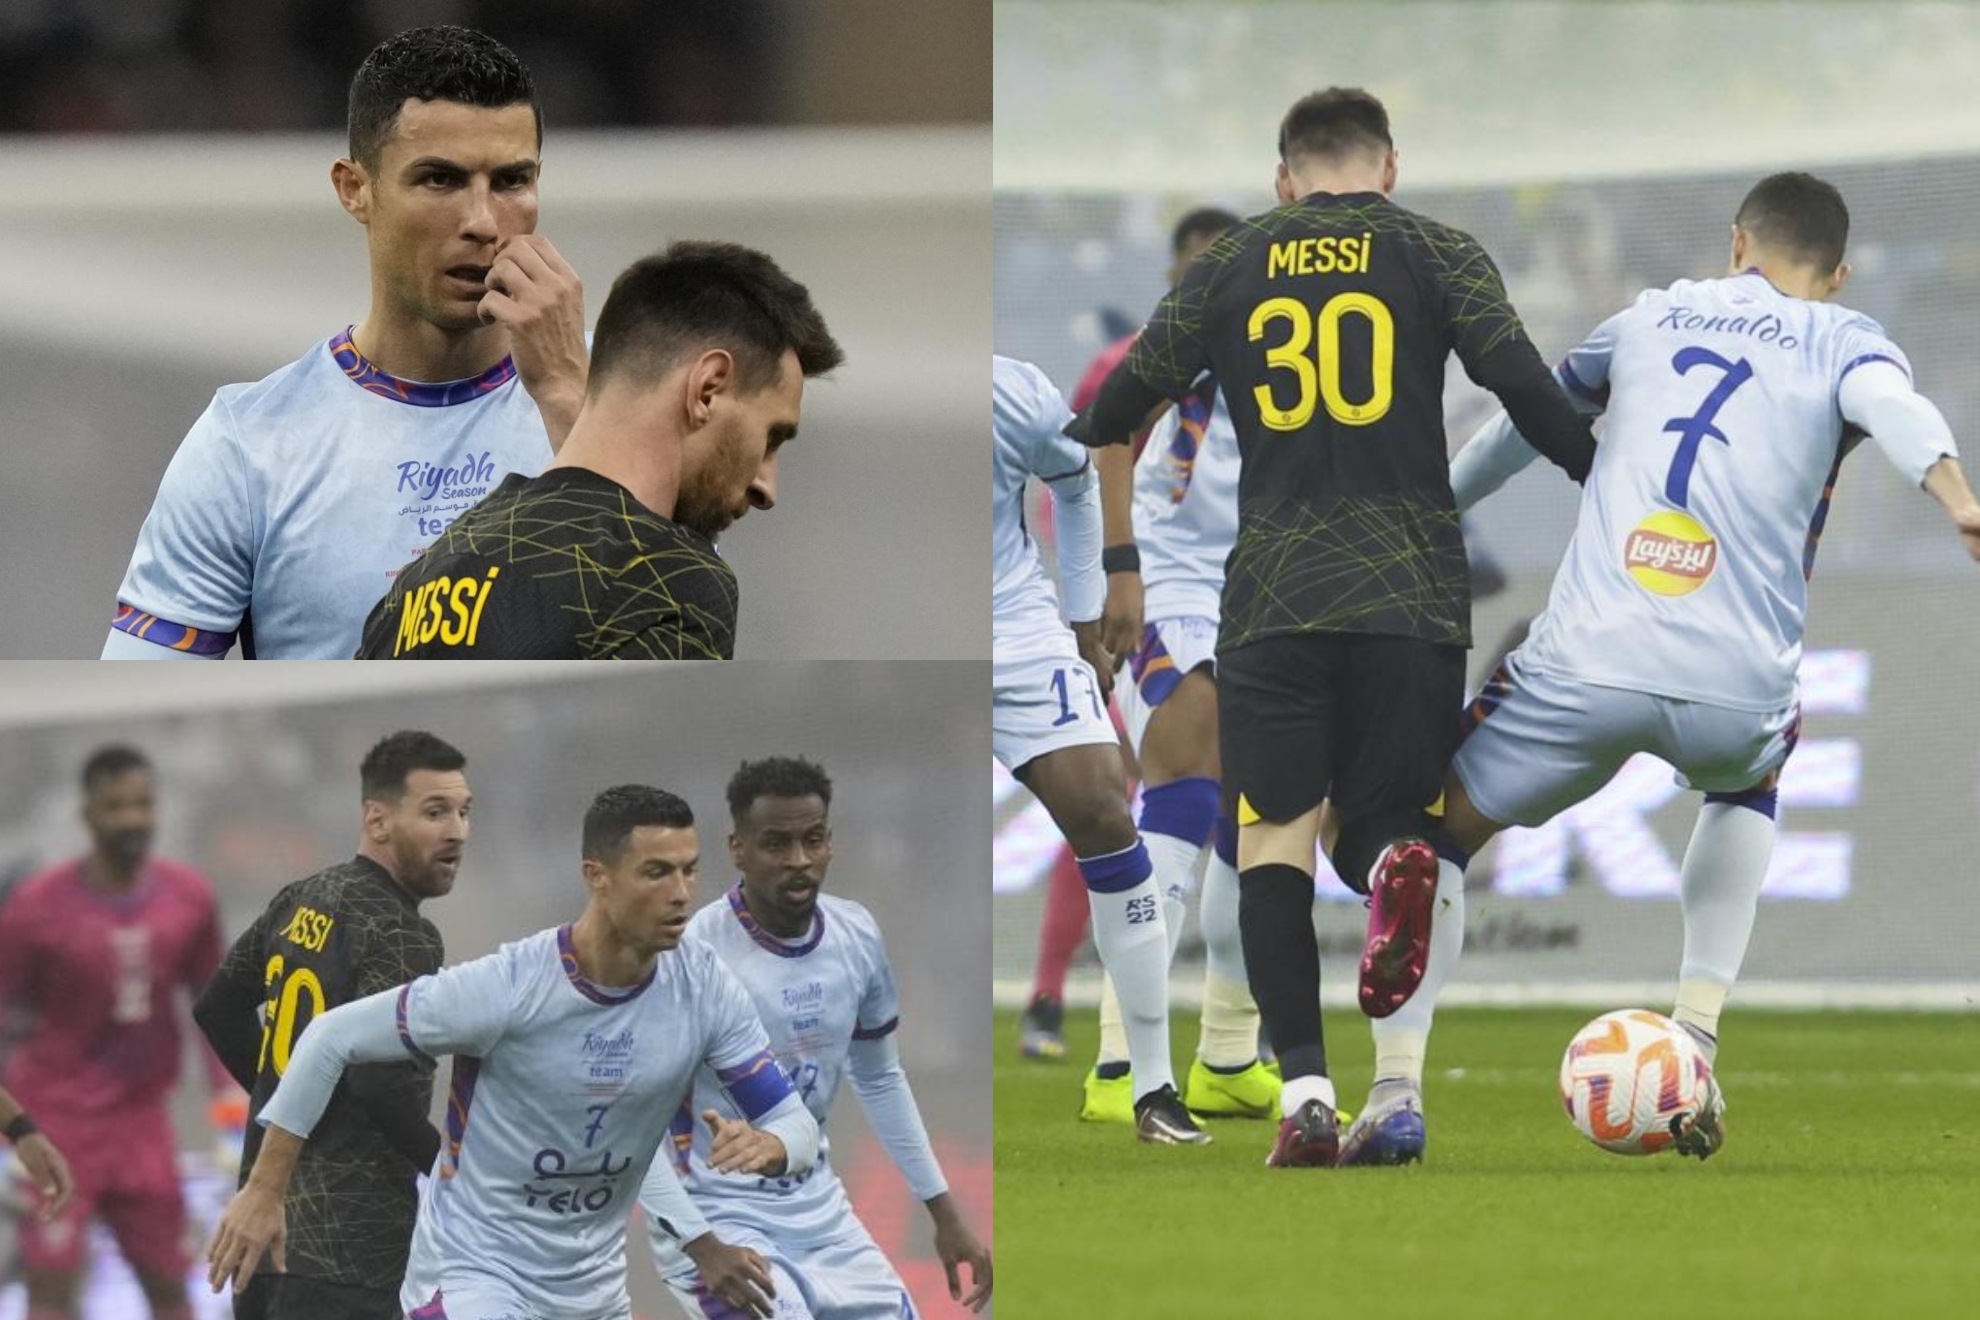 Las mejores imágenes del partido entre PSG y Riyadh Season en Arabia Saudí, el 'Last Dance' entre dos leyendas del fútbol: Cristiano Ronaldo y Lionel Messi.